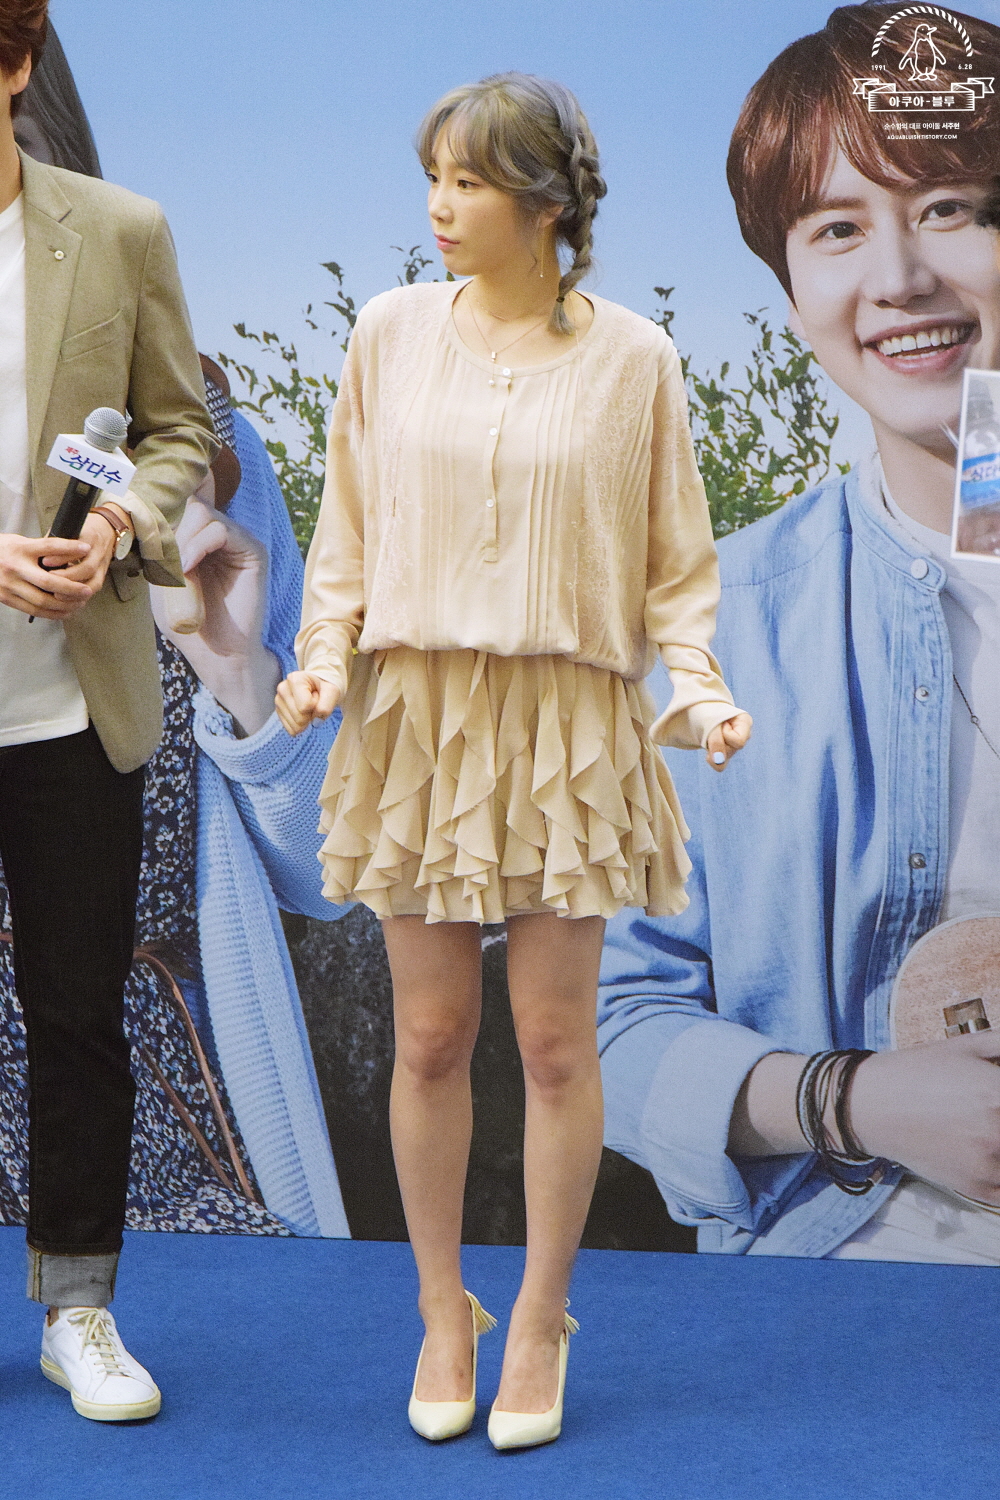 [PIC][23-09-2016]TaeYeon tham dự buổi Fansign cho thương hiệu nước uống "SAMDASOO" tại COEX Live Plaza vào tối nay - Page 4 UduFOrt3VW